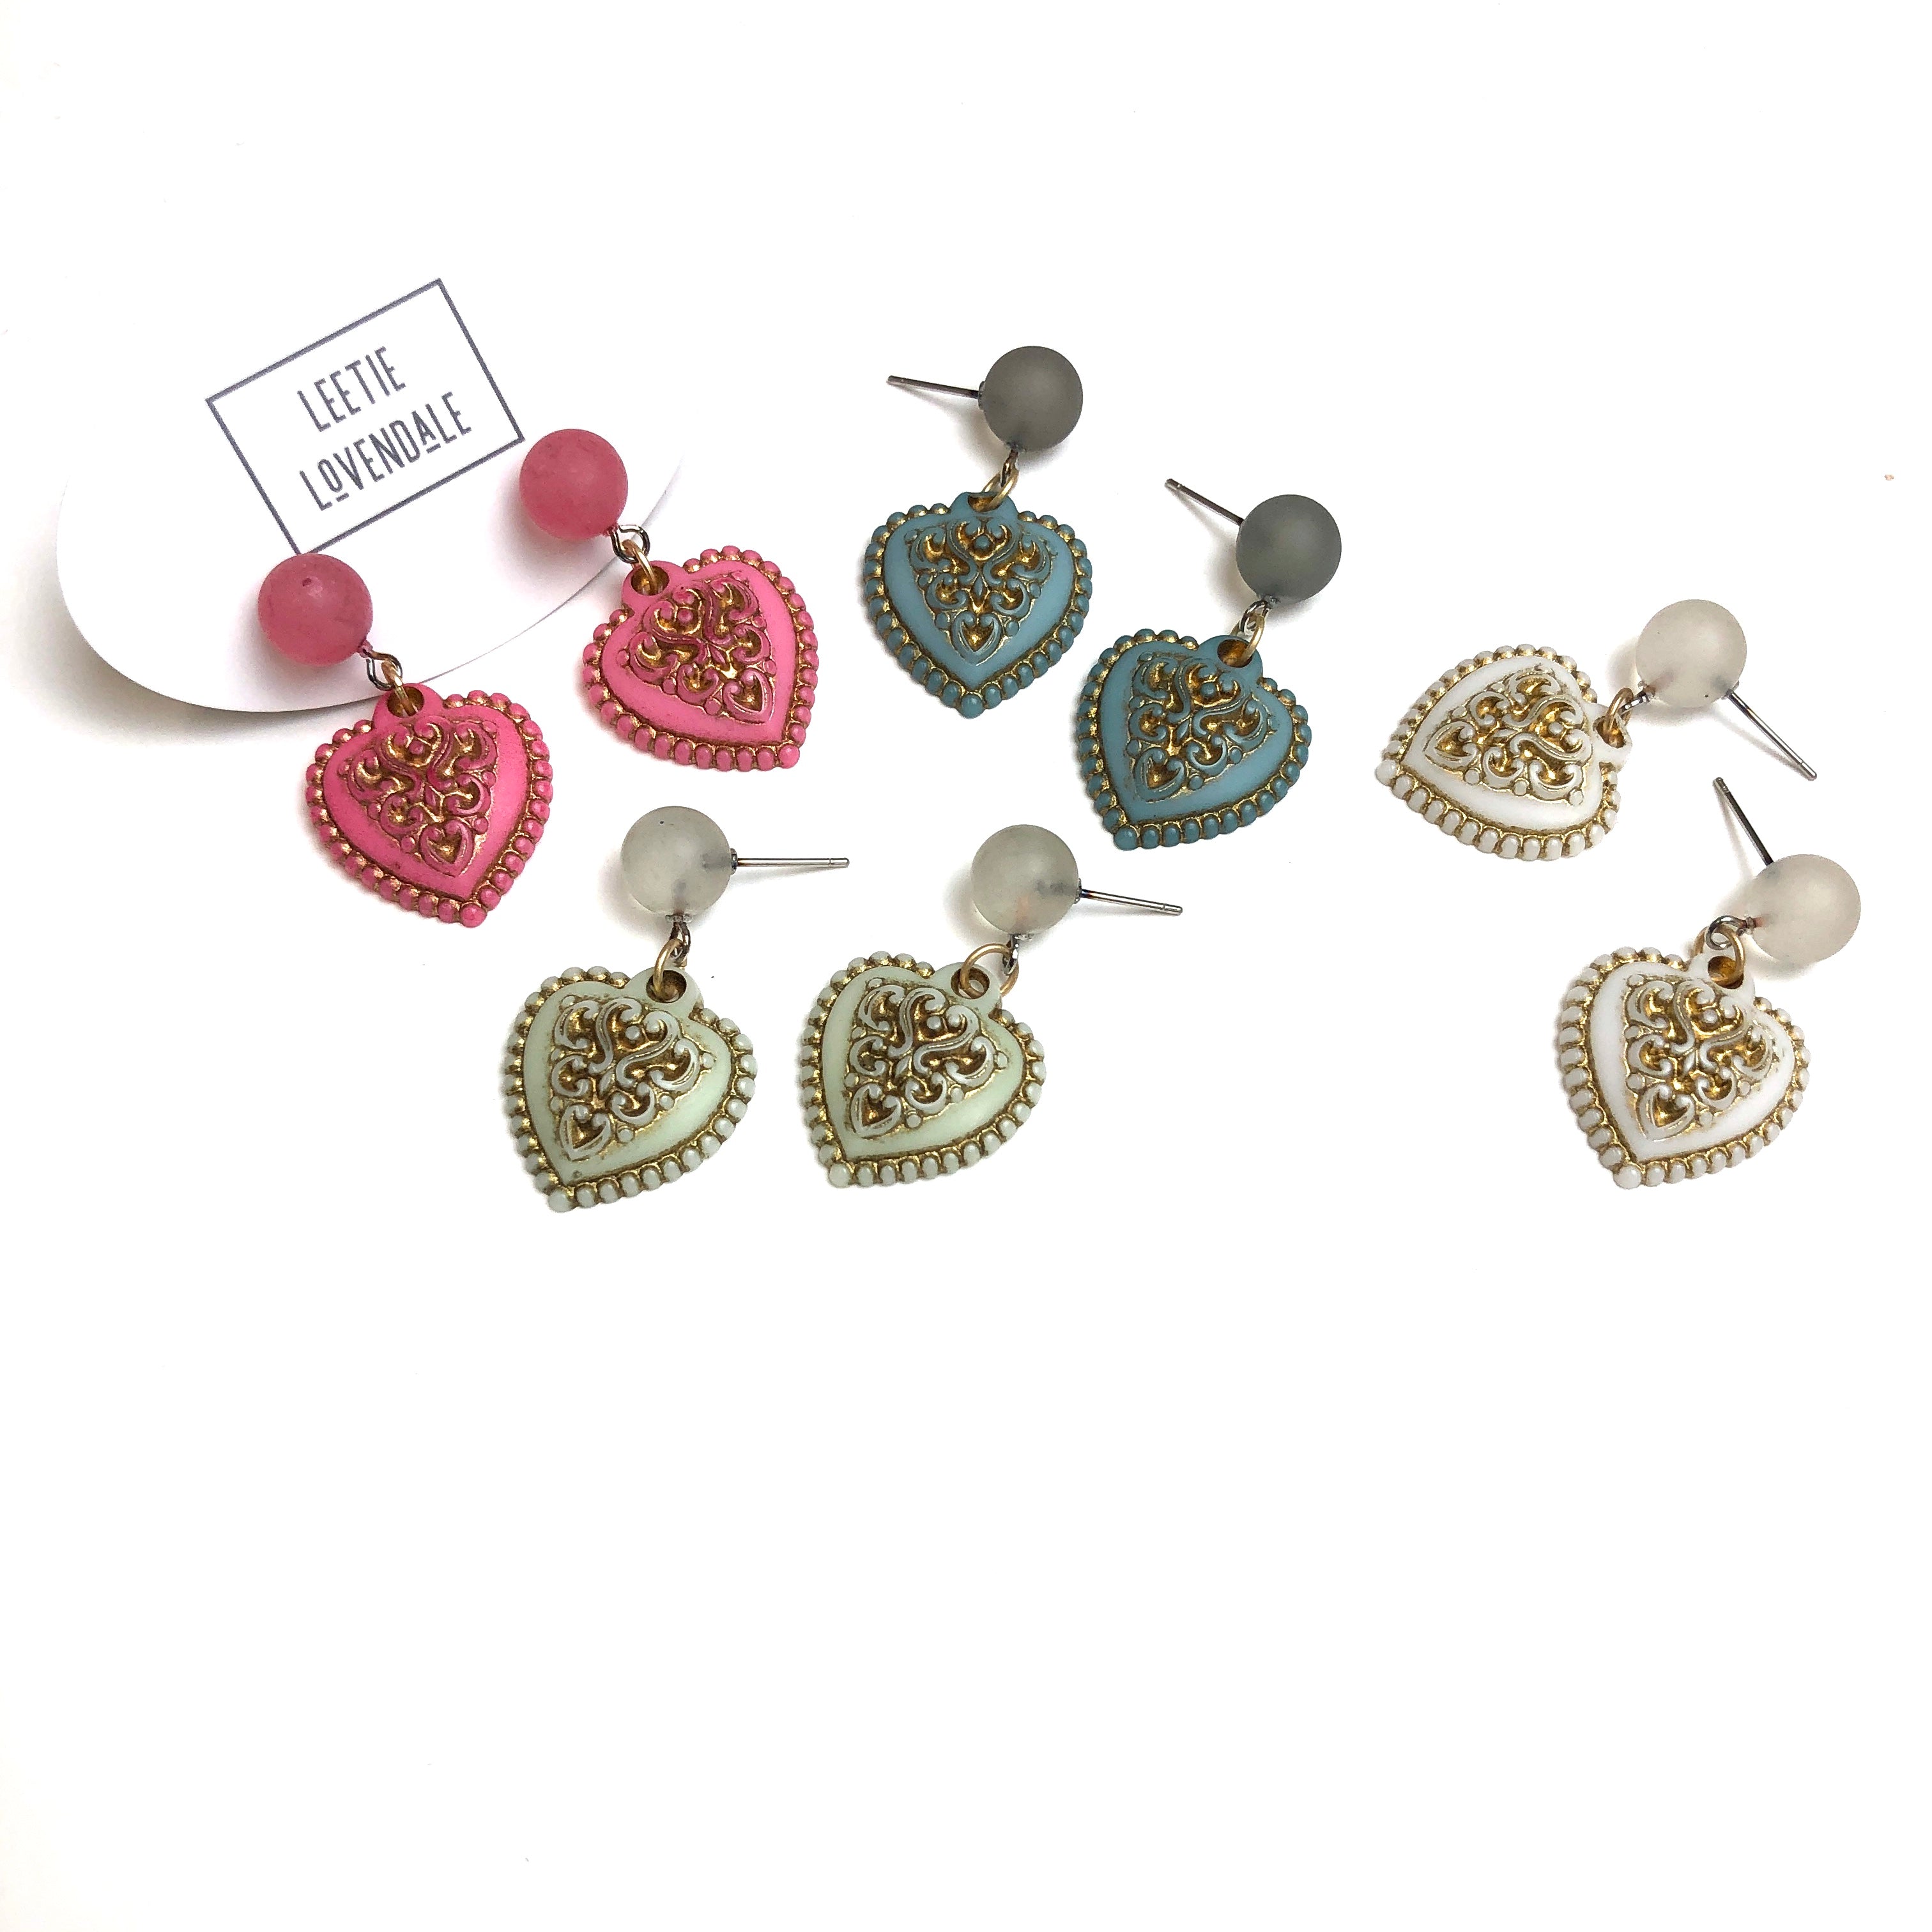 vintage heart earrings